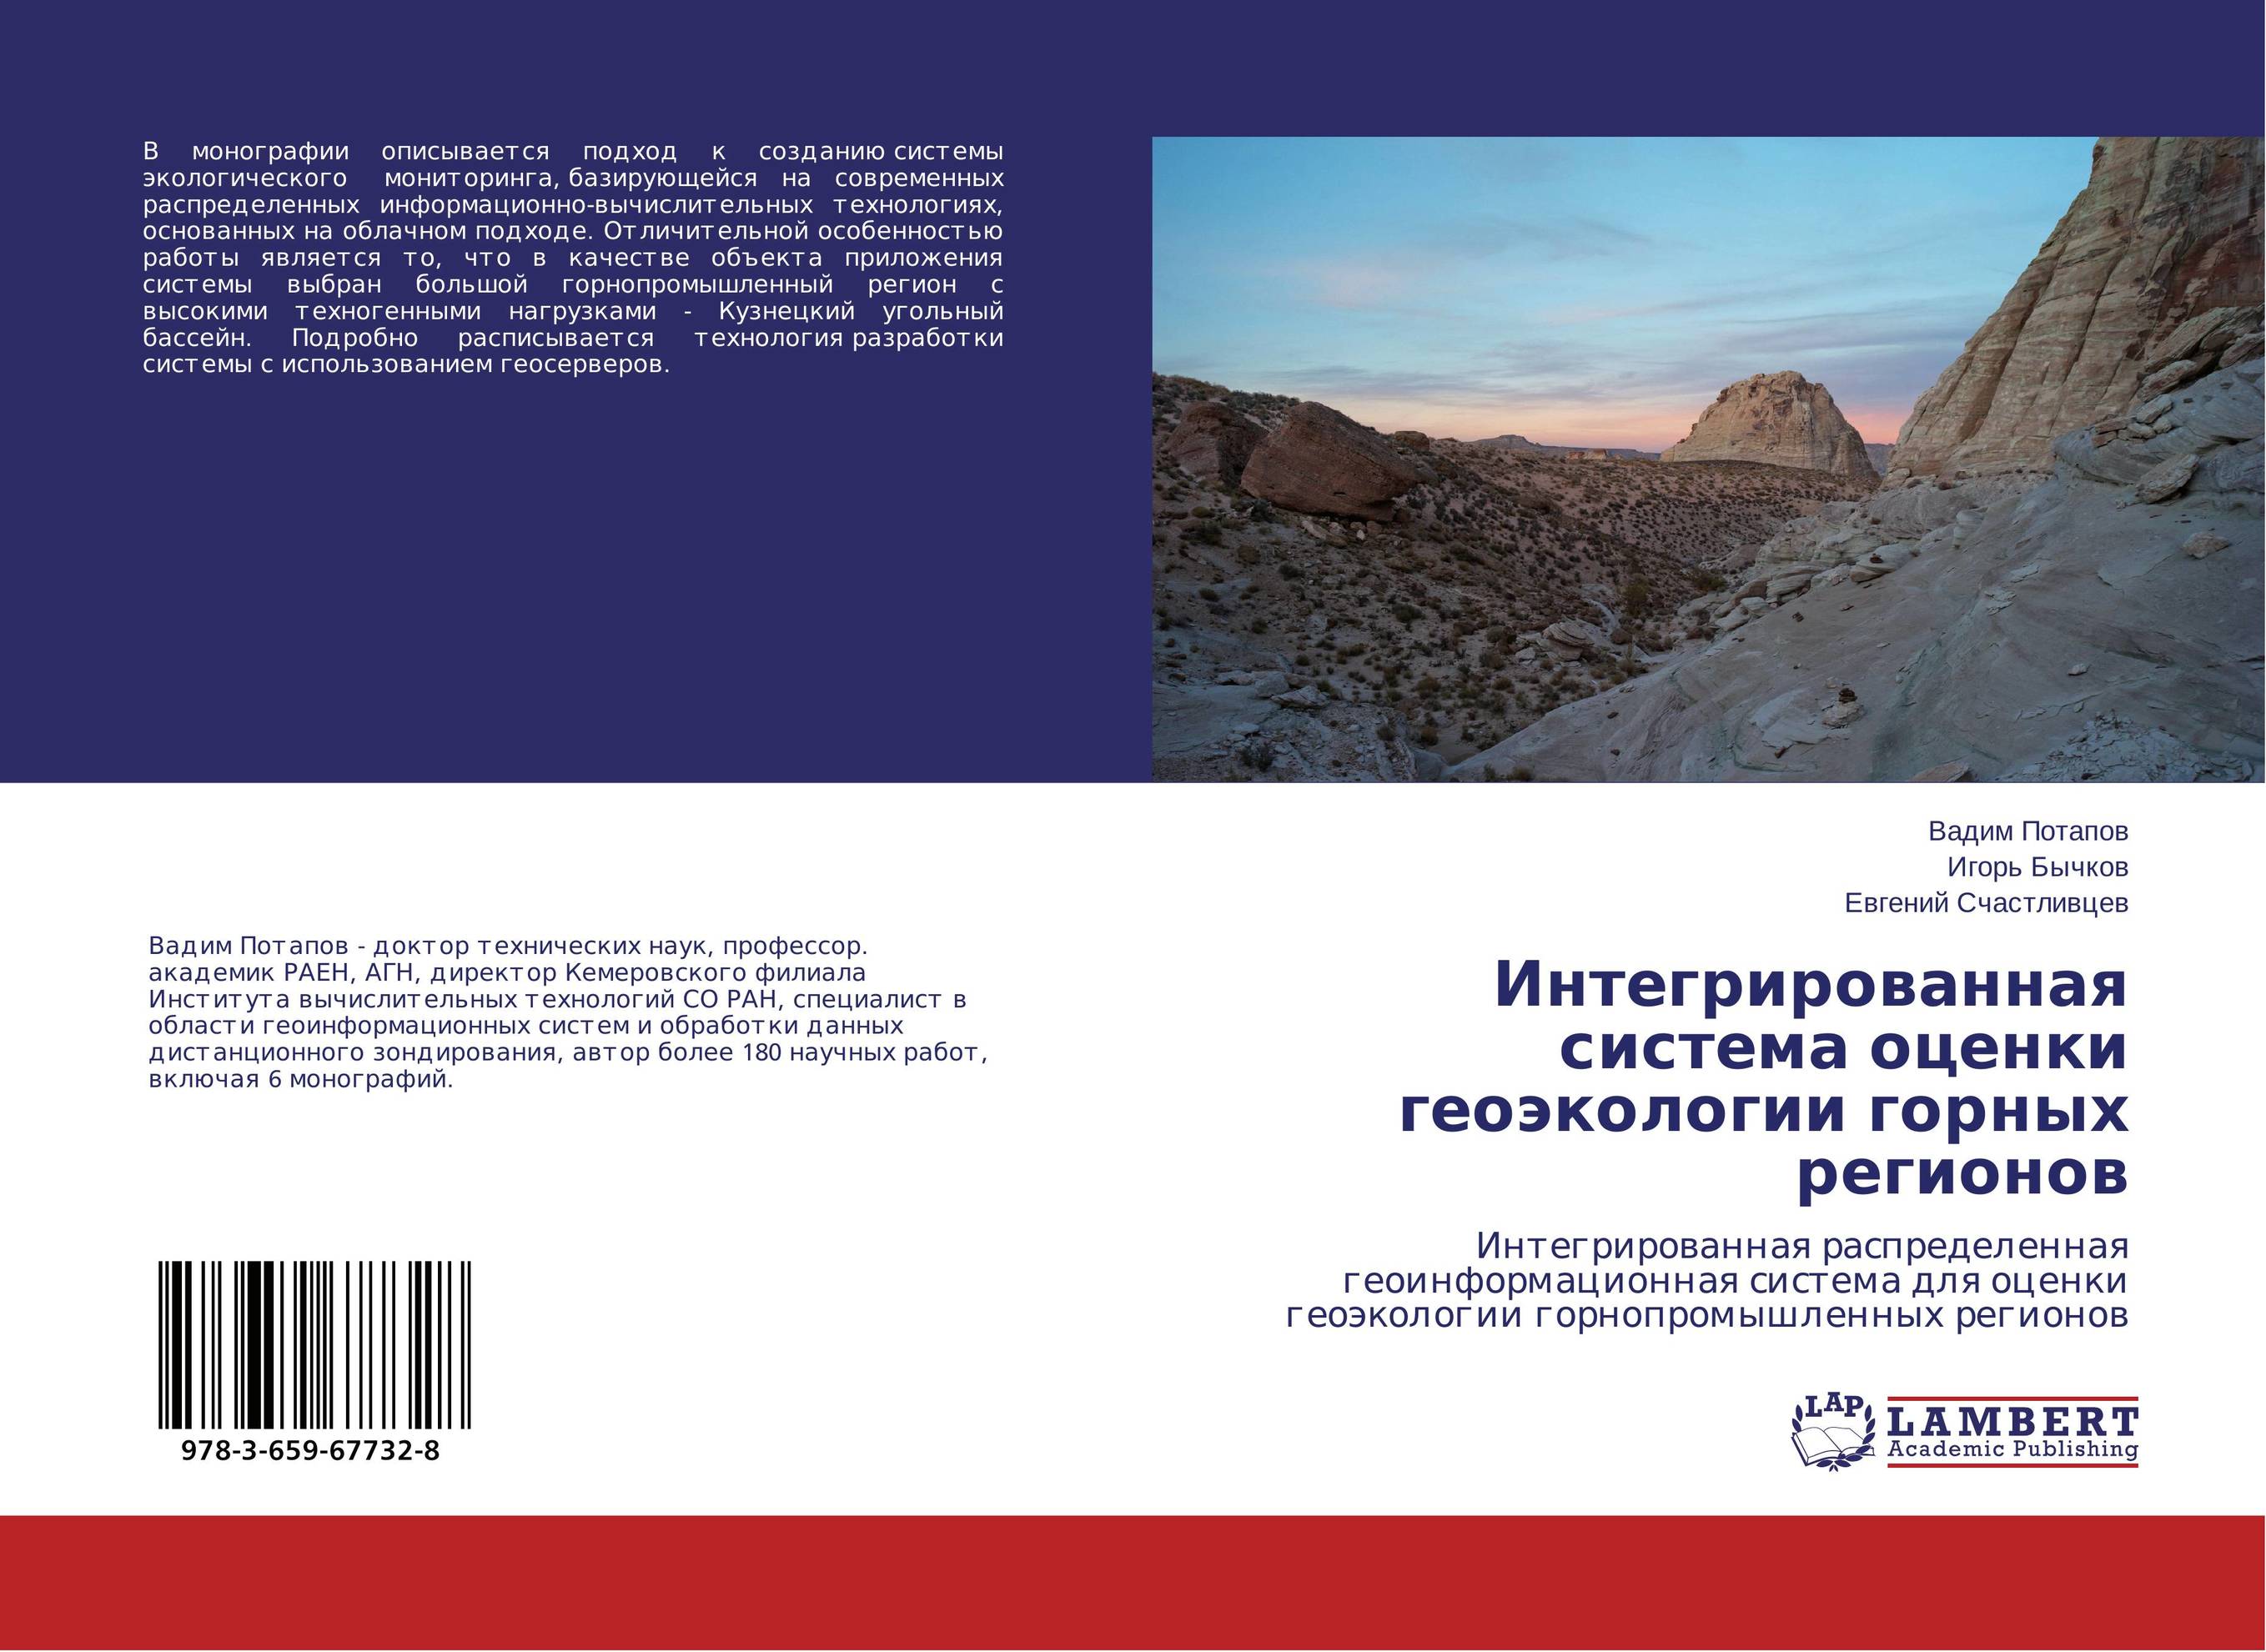 
        Интегрированная система оценки геоэкологии горных регионов. Интегрированная распределенная геоинформационная система для оценки геоэкологии горнопромышленных регионов.
      